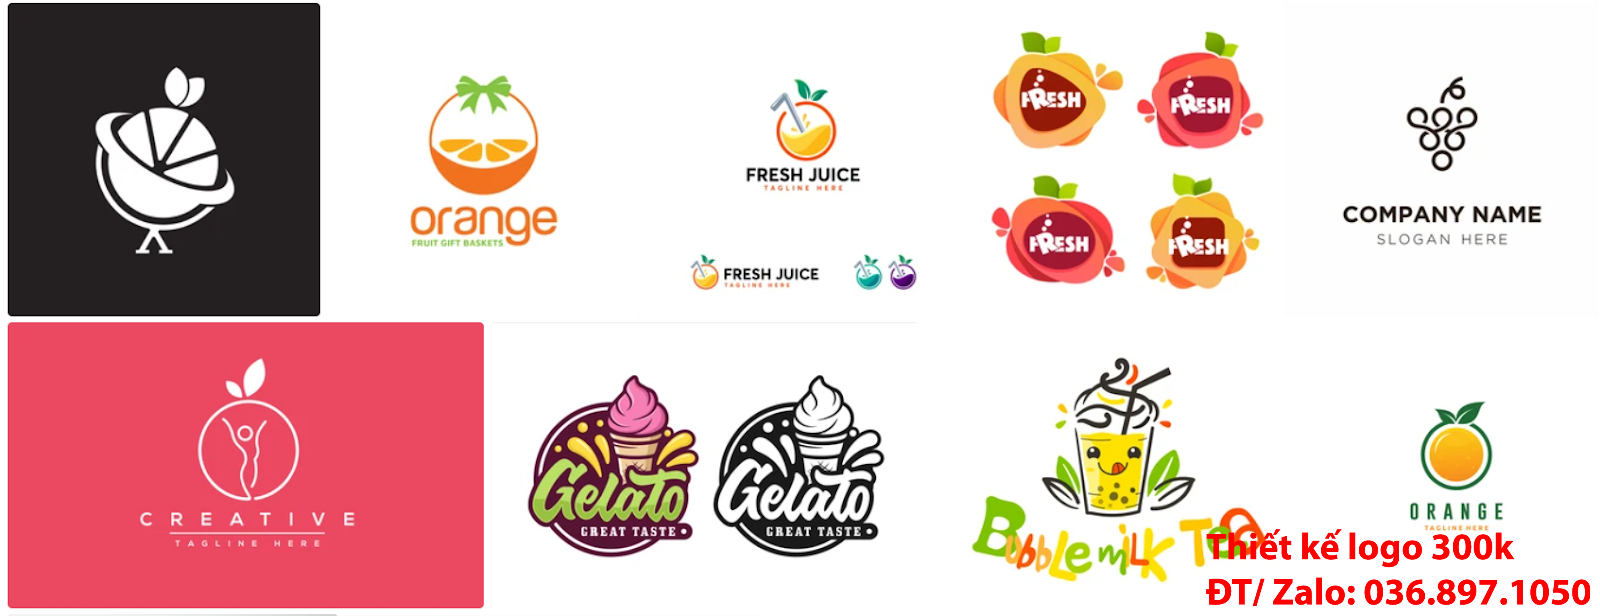 Nhận tạo Mẫu thiết kế Logo trái cây đẹp nhất hiện nay tại Tp Hồ Chí Minh với giá rẻ chất lượng